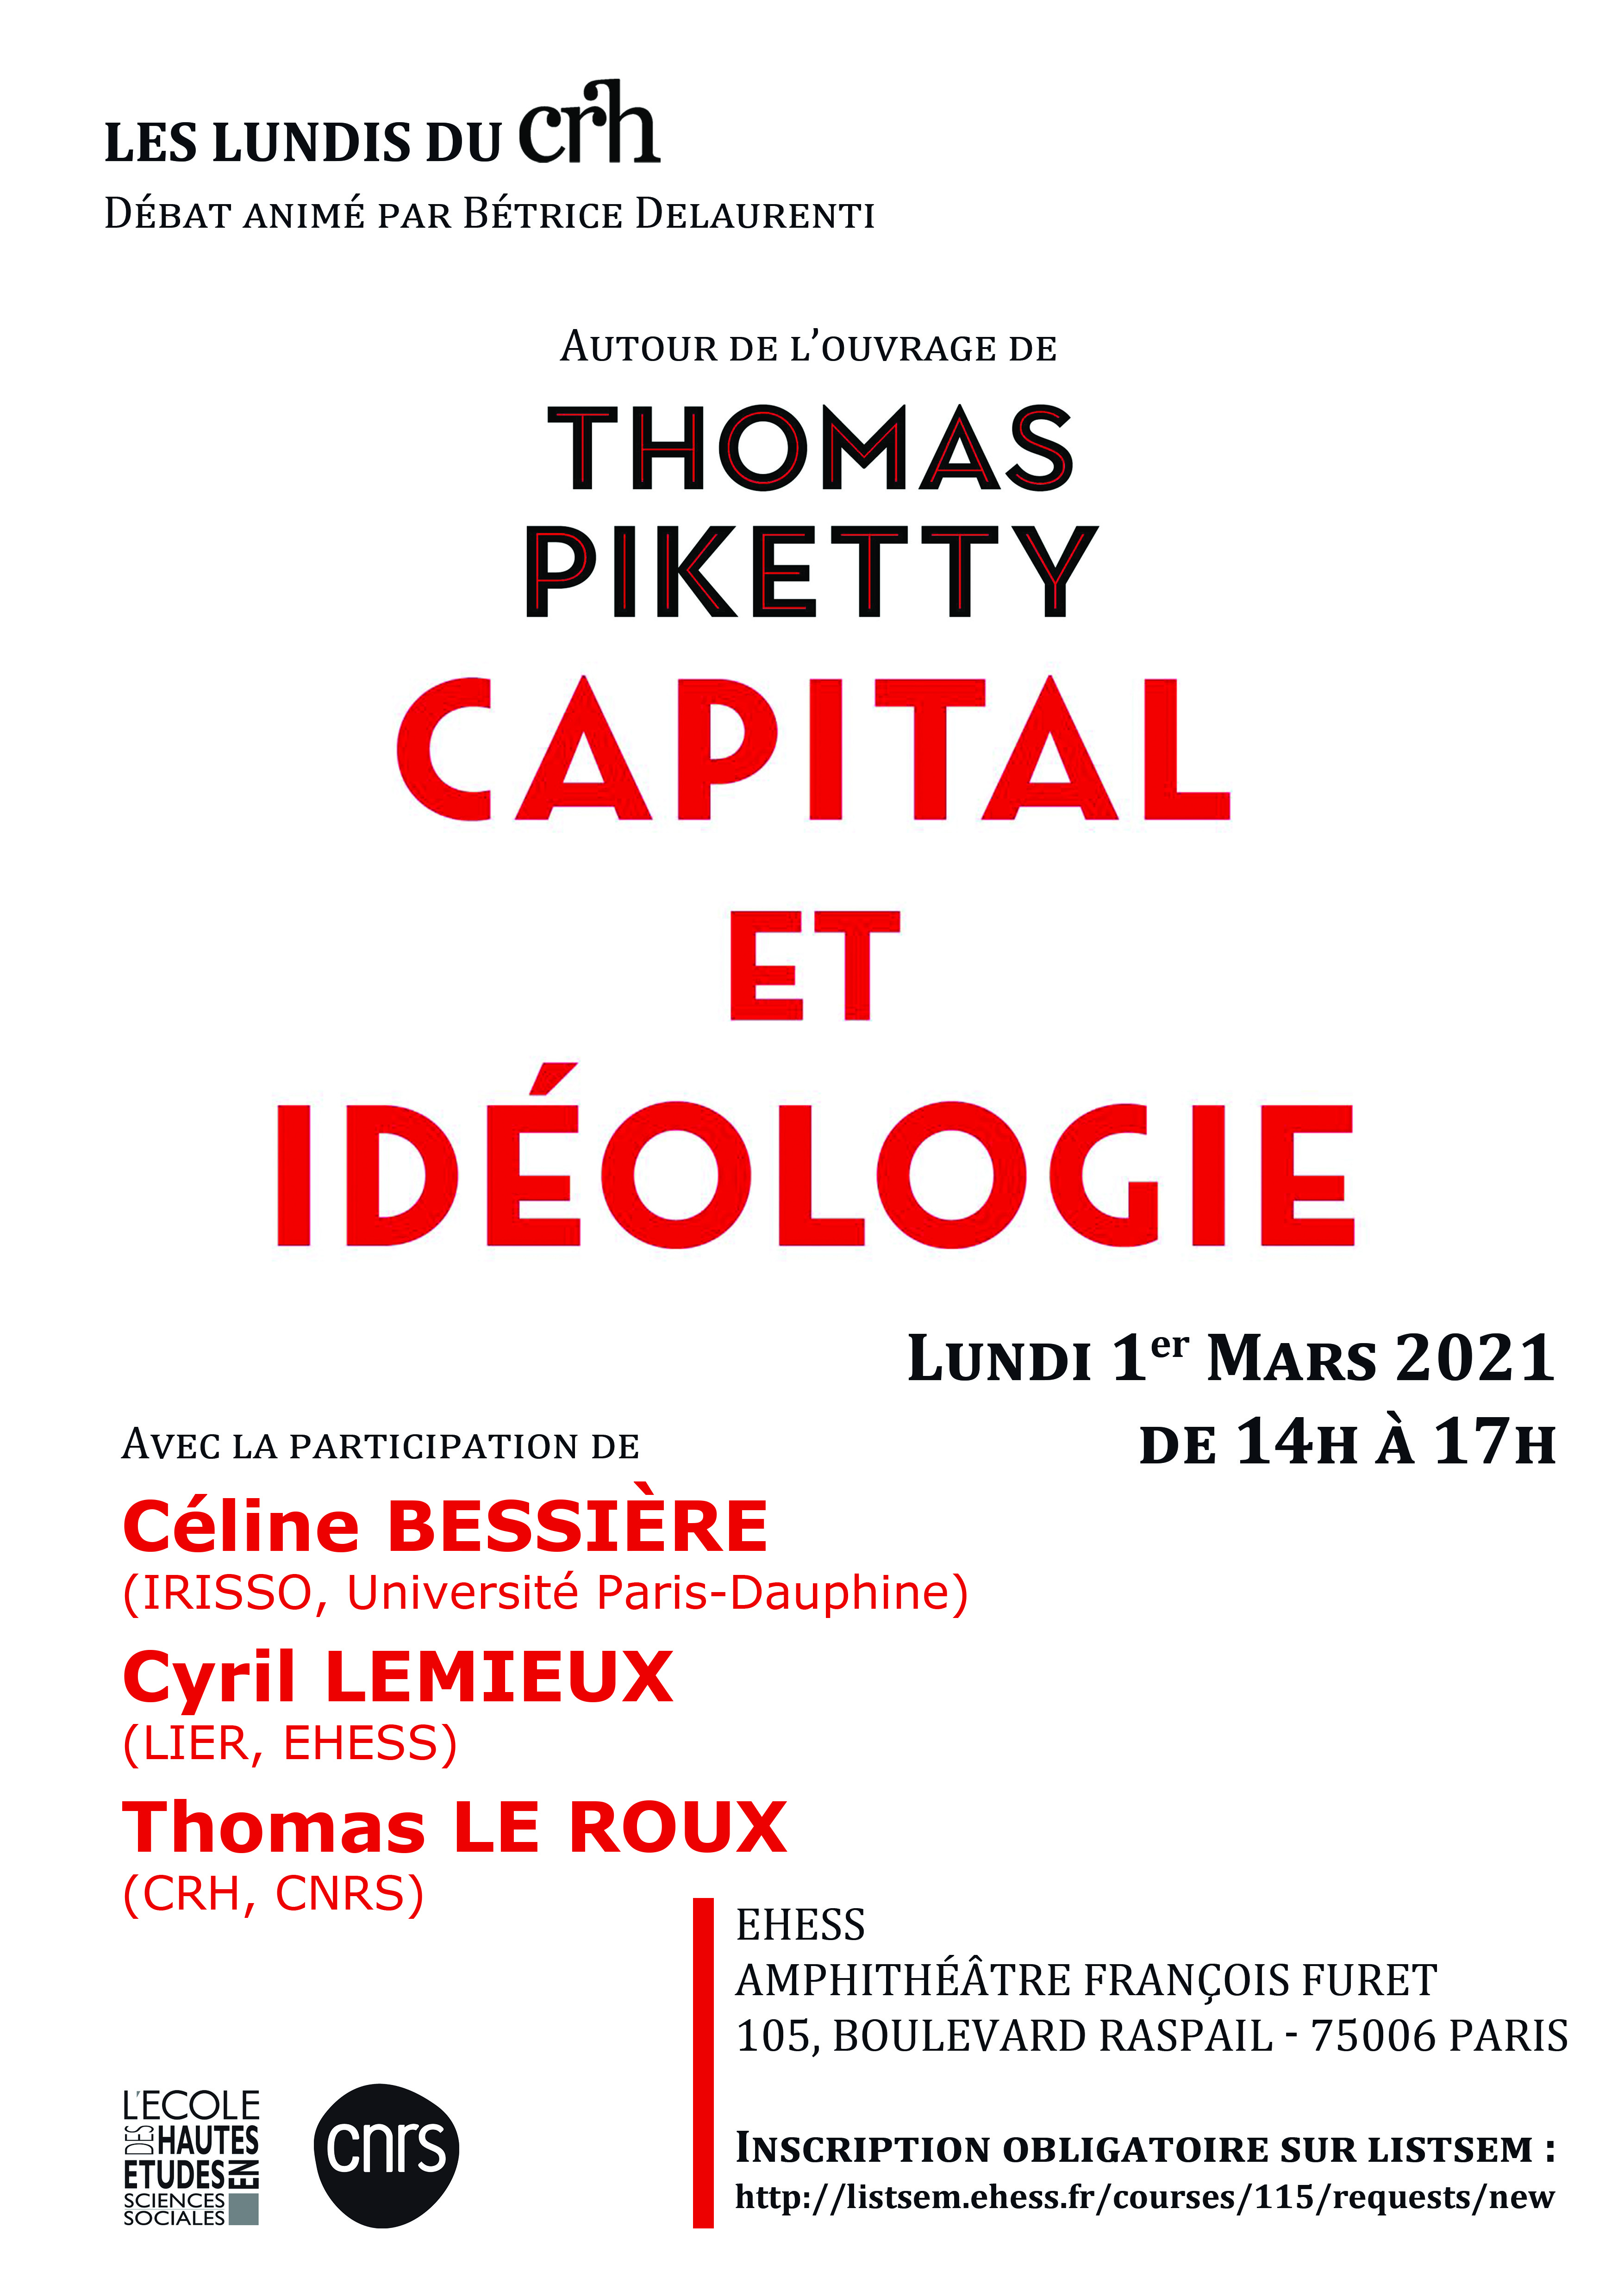 Autour de l'ouvrage de Thomas Piketty, Capital et idéologie